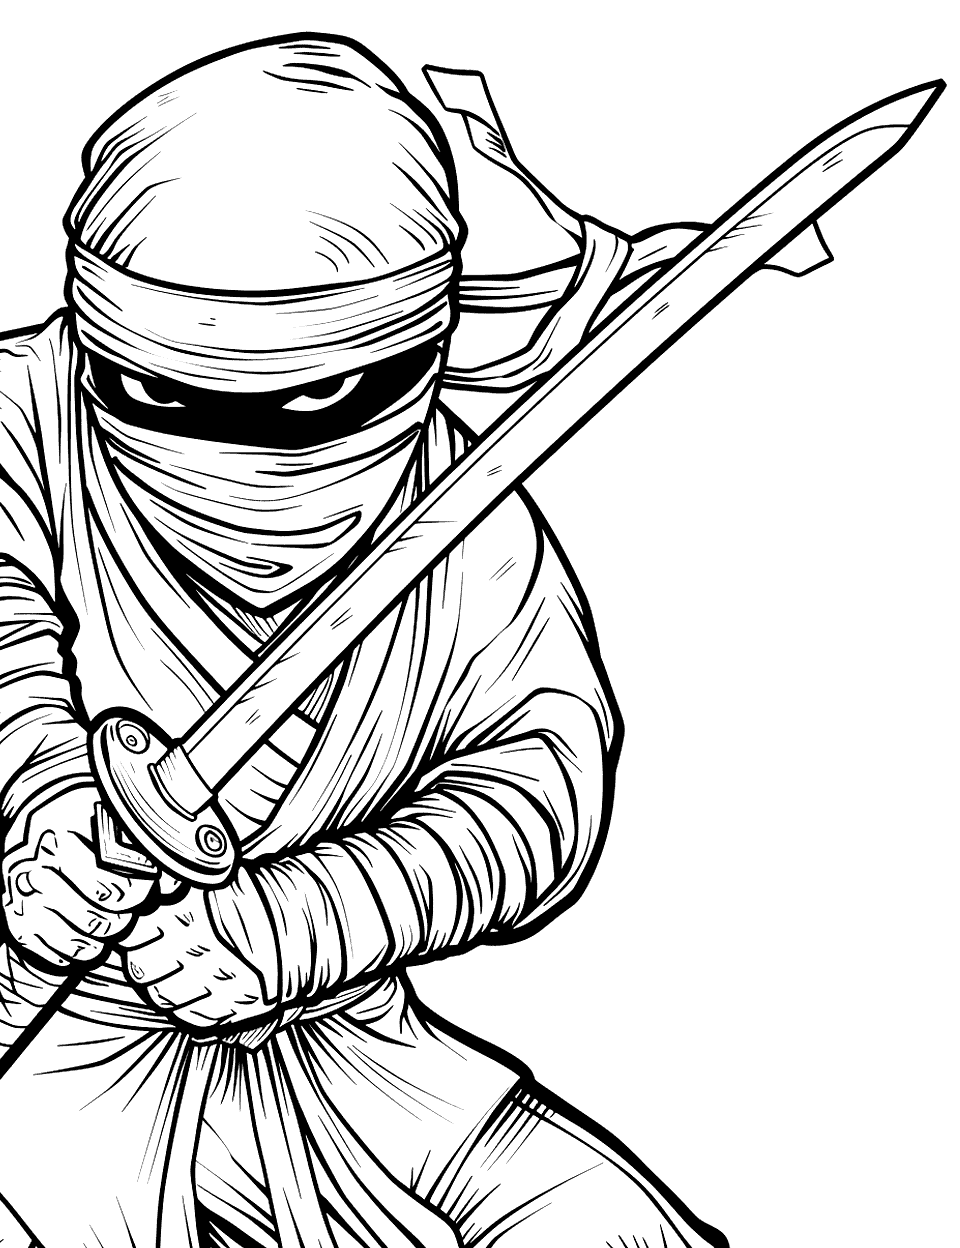 Katana Blade Close-Up Ninja Coloring Page - A close-up of a ninja holding a katana.